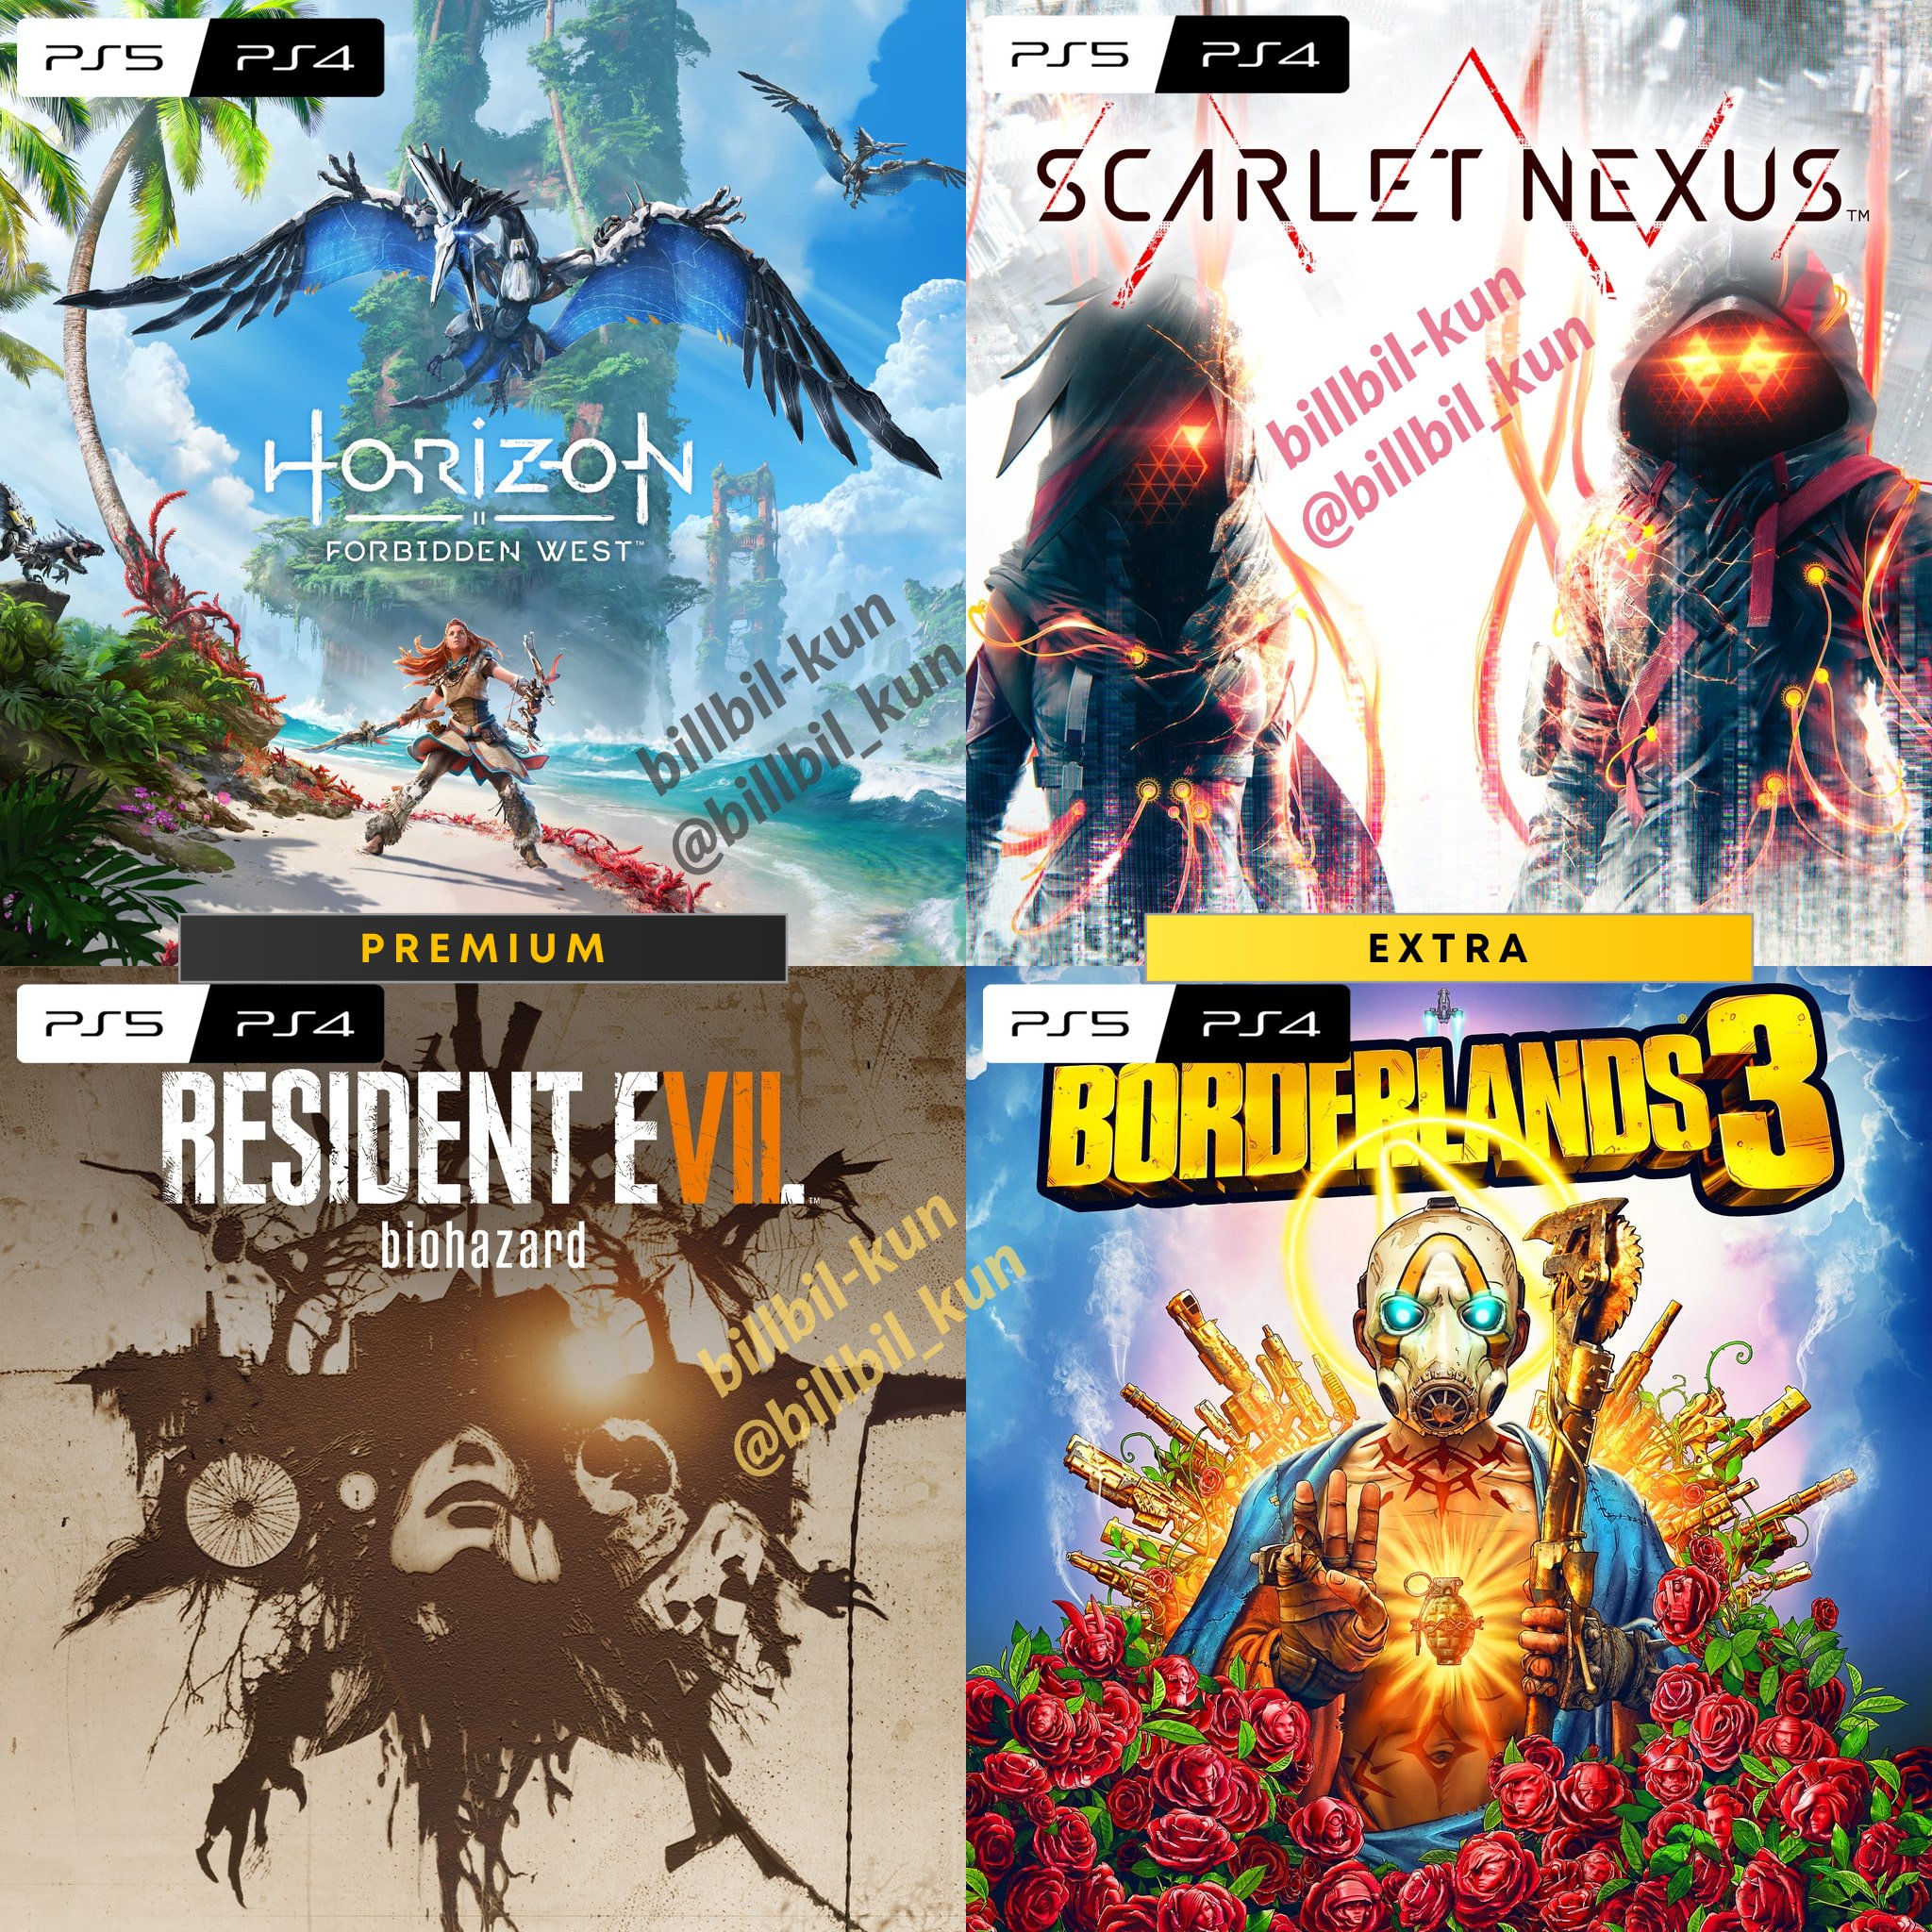 Vitor on X: 🚨🚨 URGENTE: 4 jogos do catálogo do PlayStation Plus